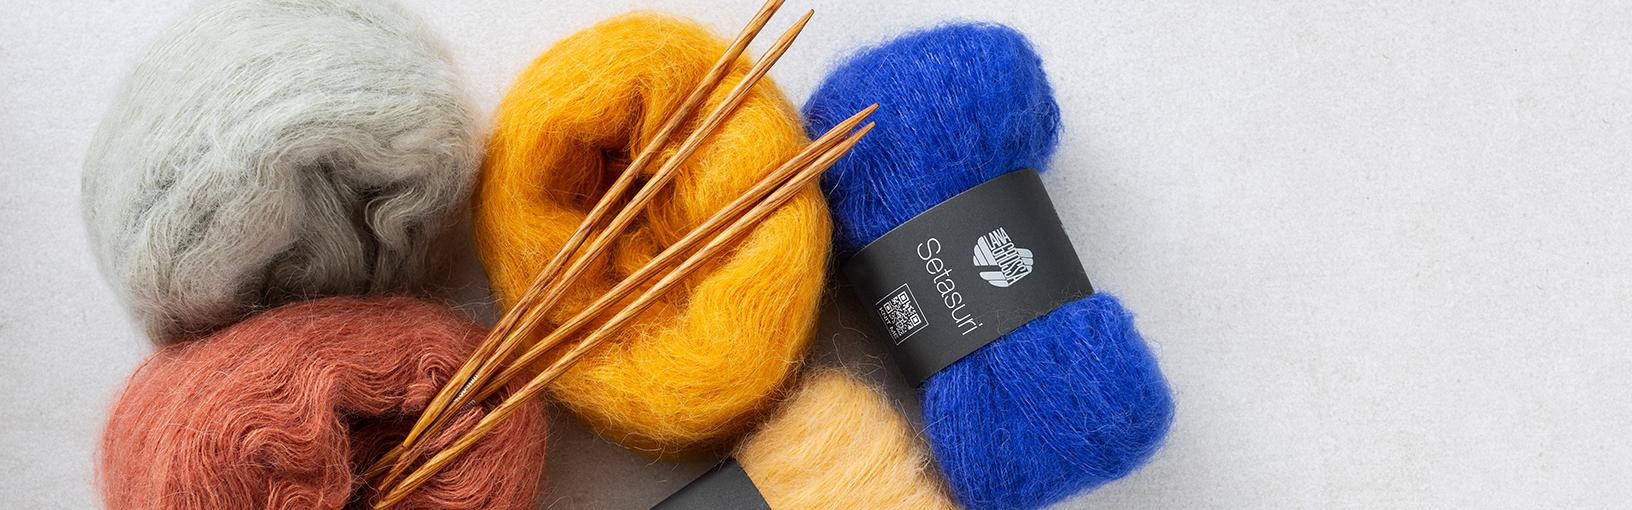 Hilos de alta calidad para tejer, crochet y fieltro Hilos Lana Grossa | Hilos calzetin | Socktober